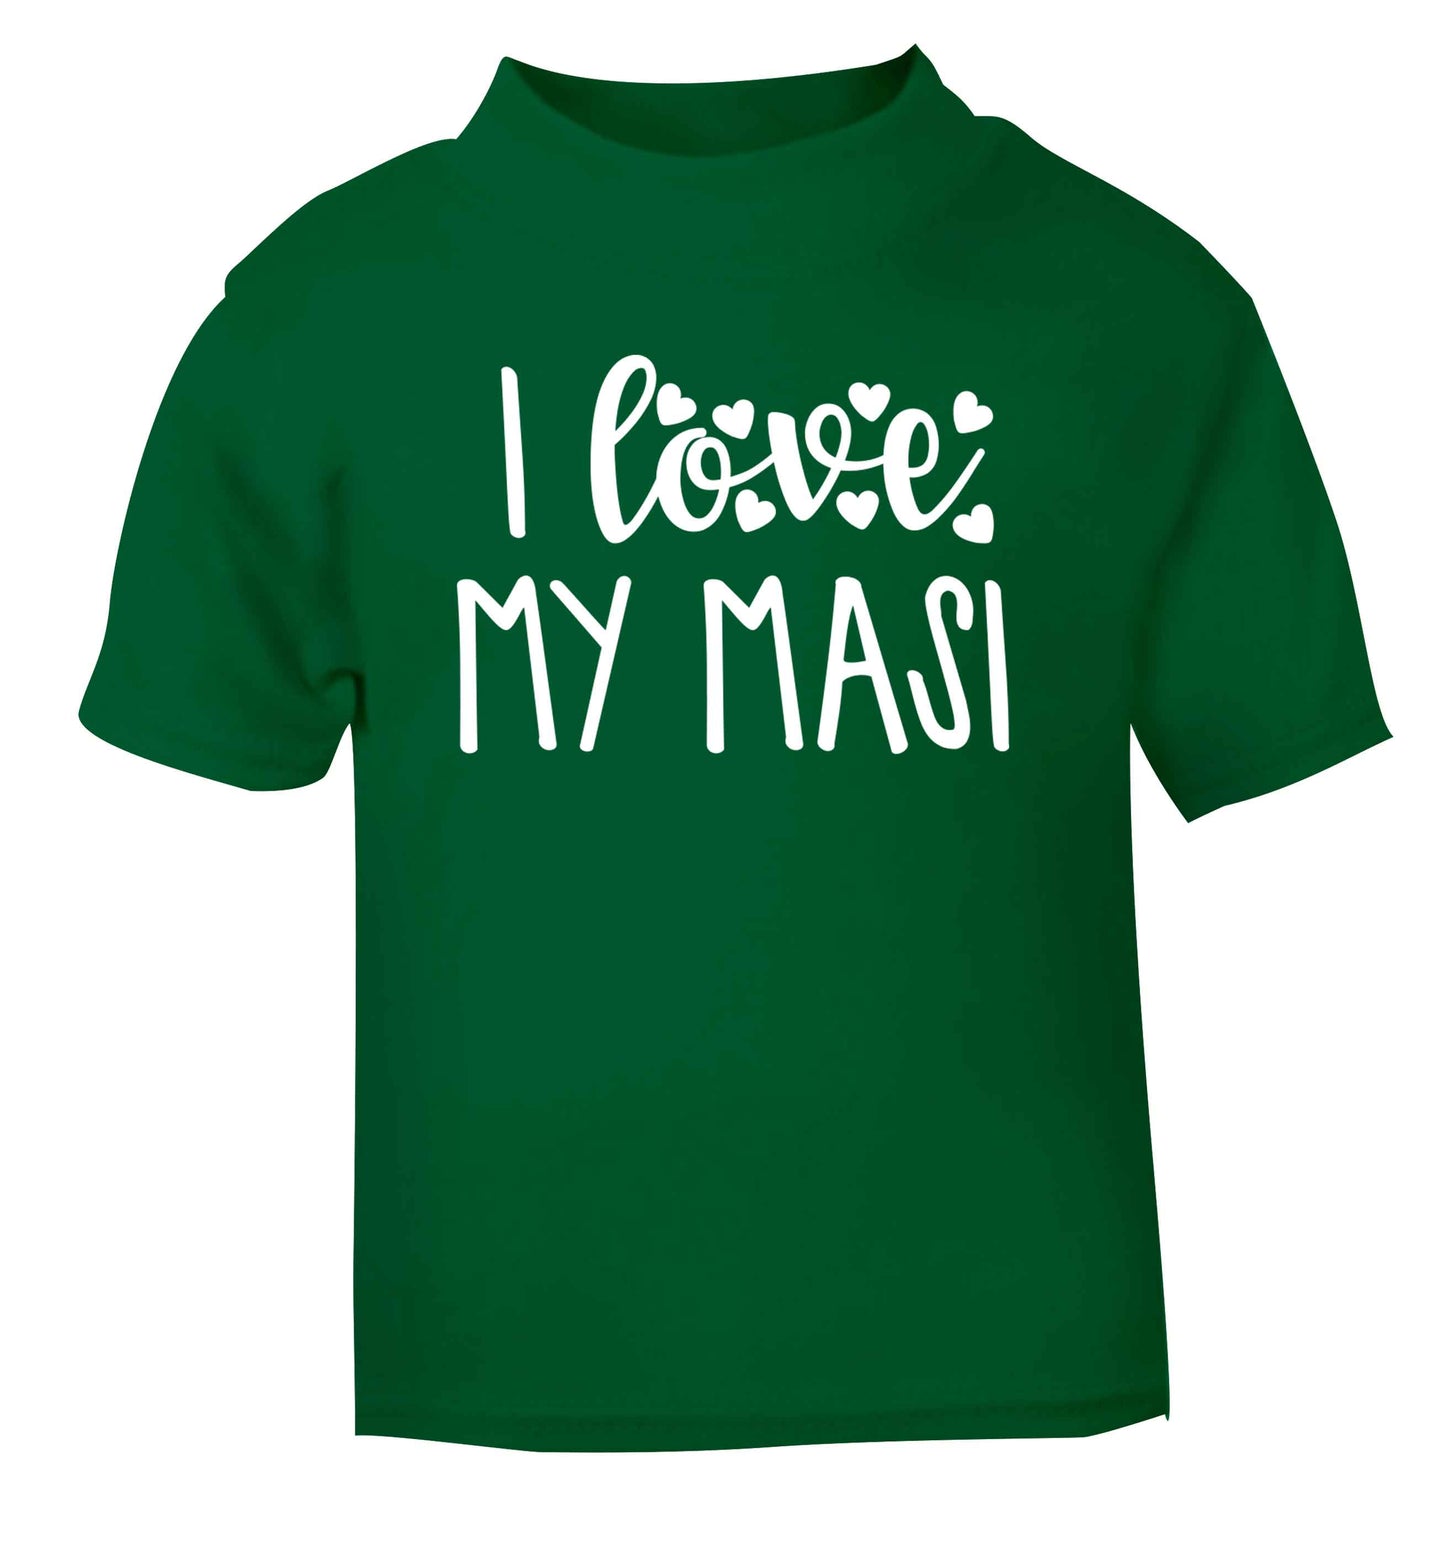 I love my masi green Baby Toddler Tshirt 2 Years